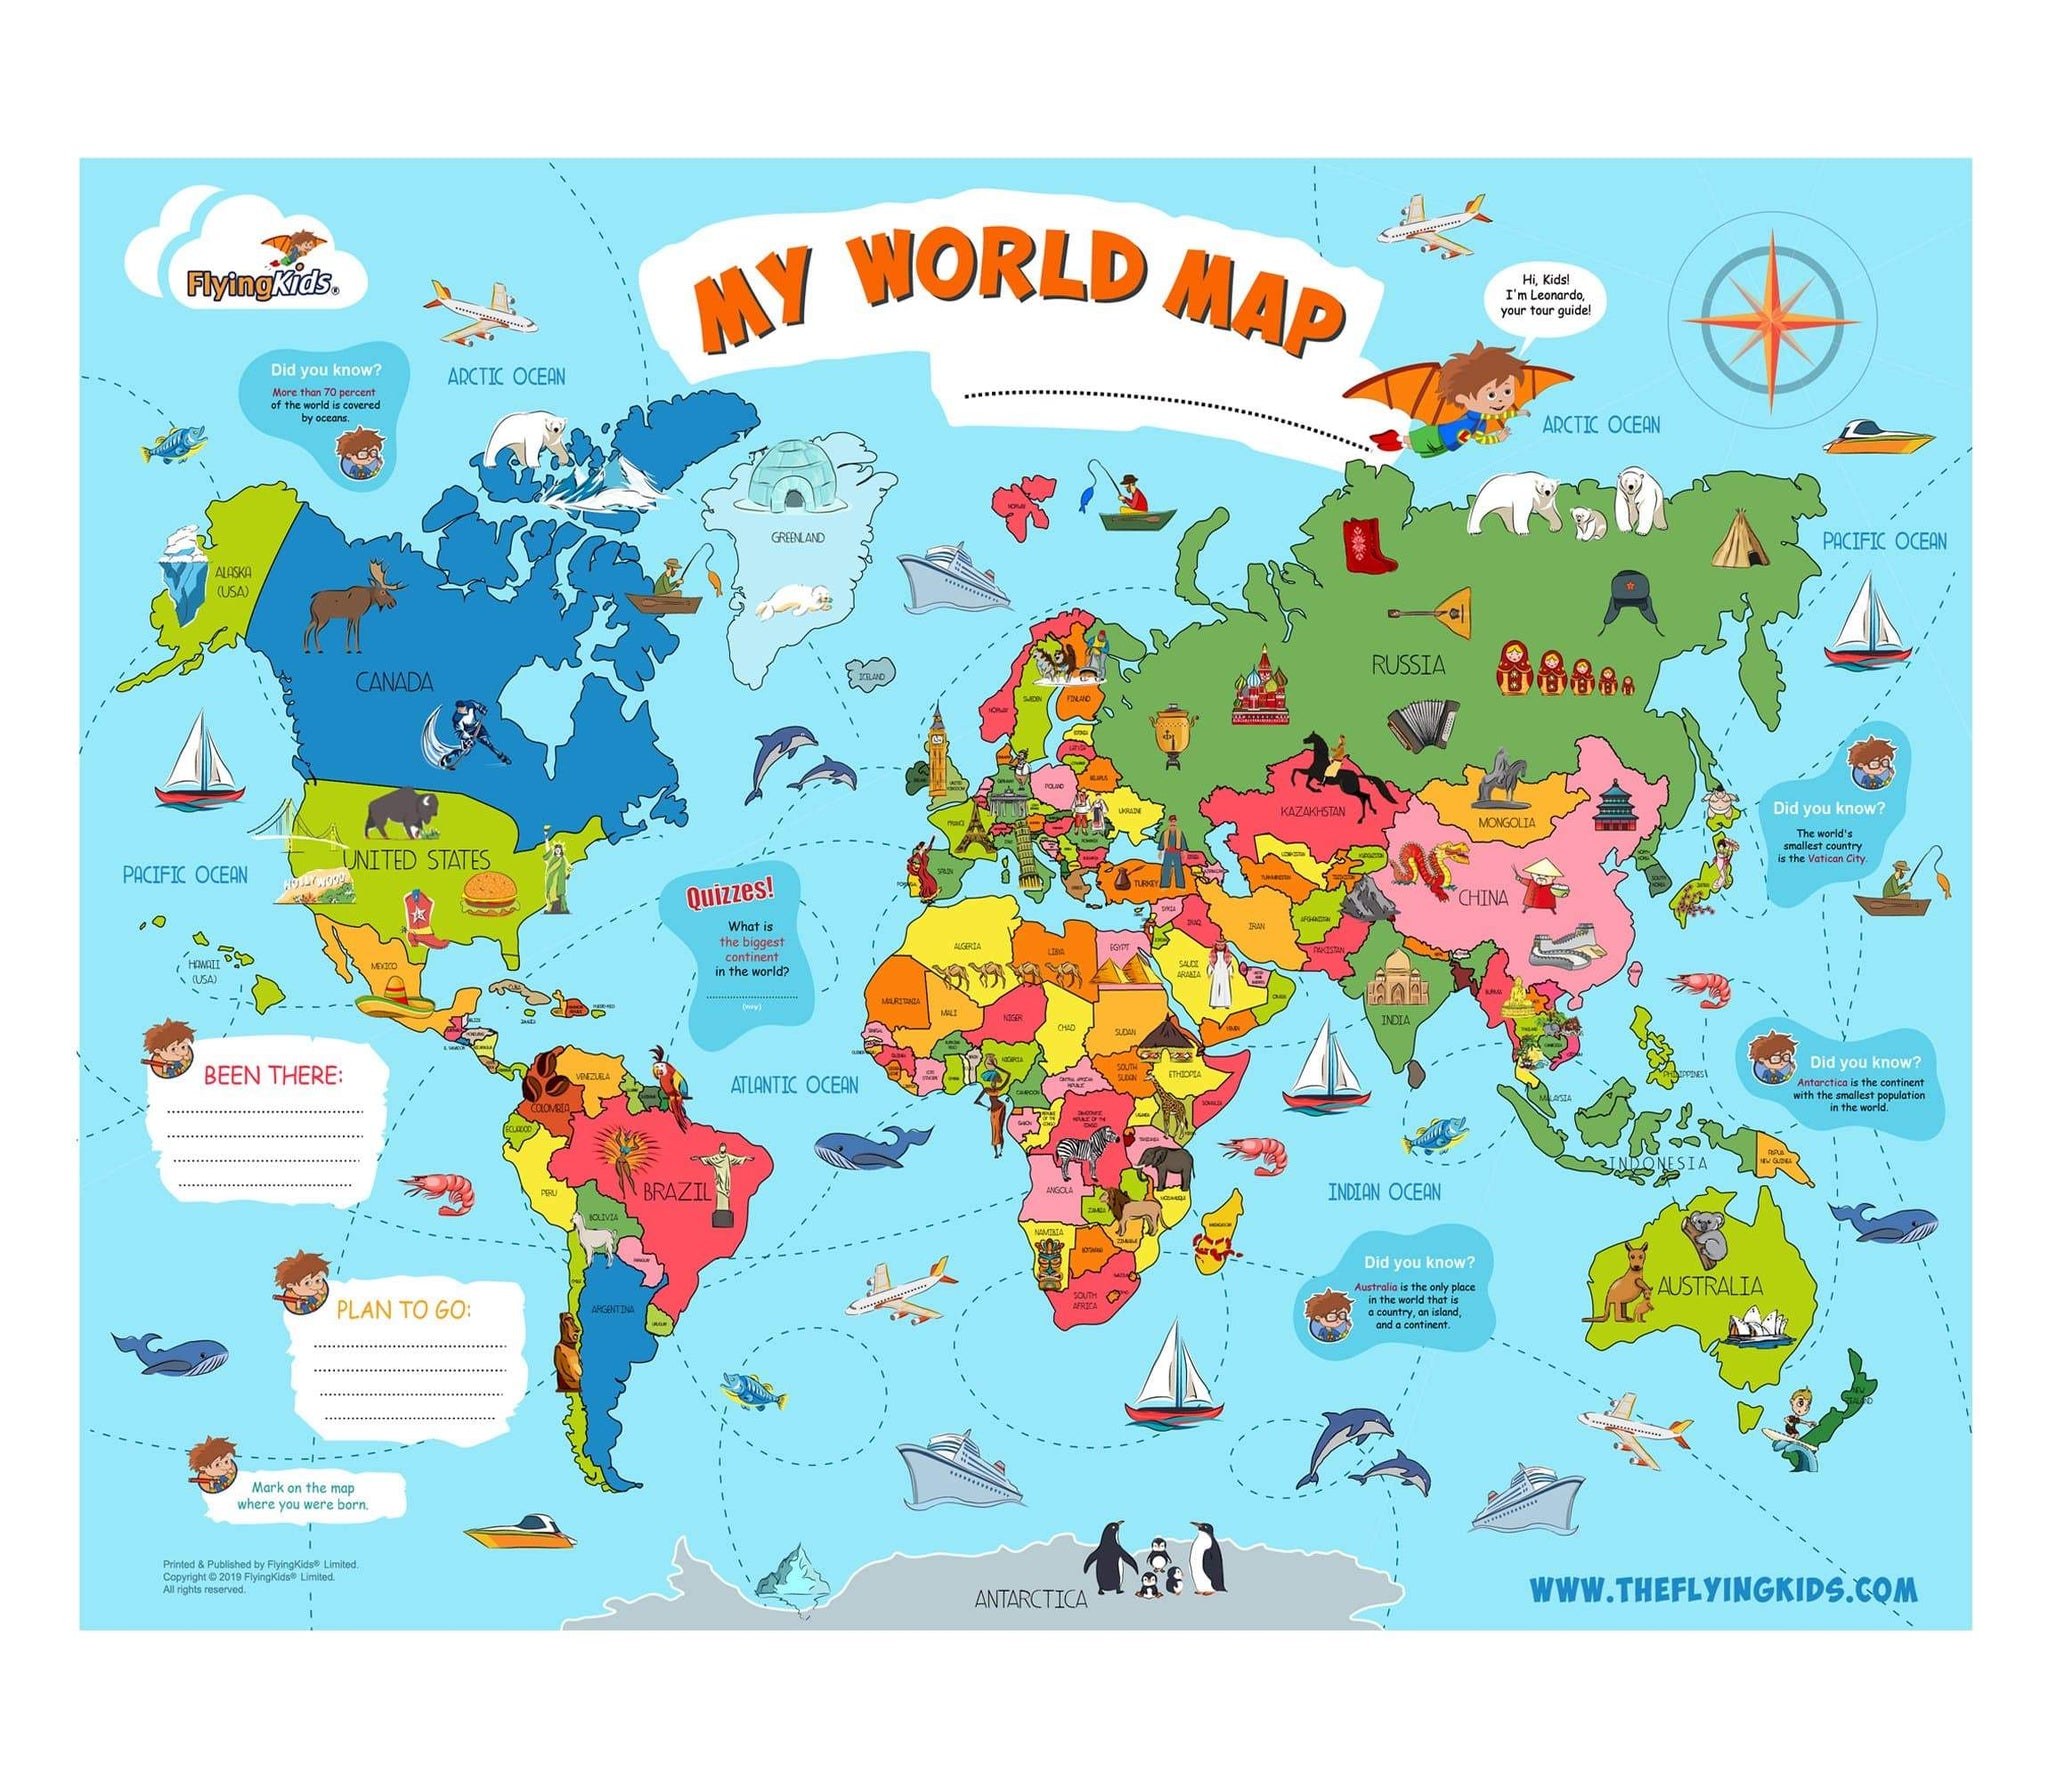 laminated wall size world maps